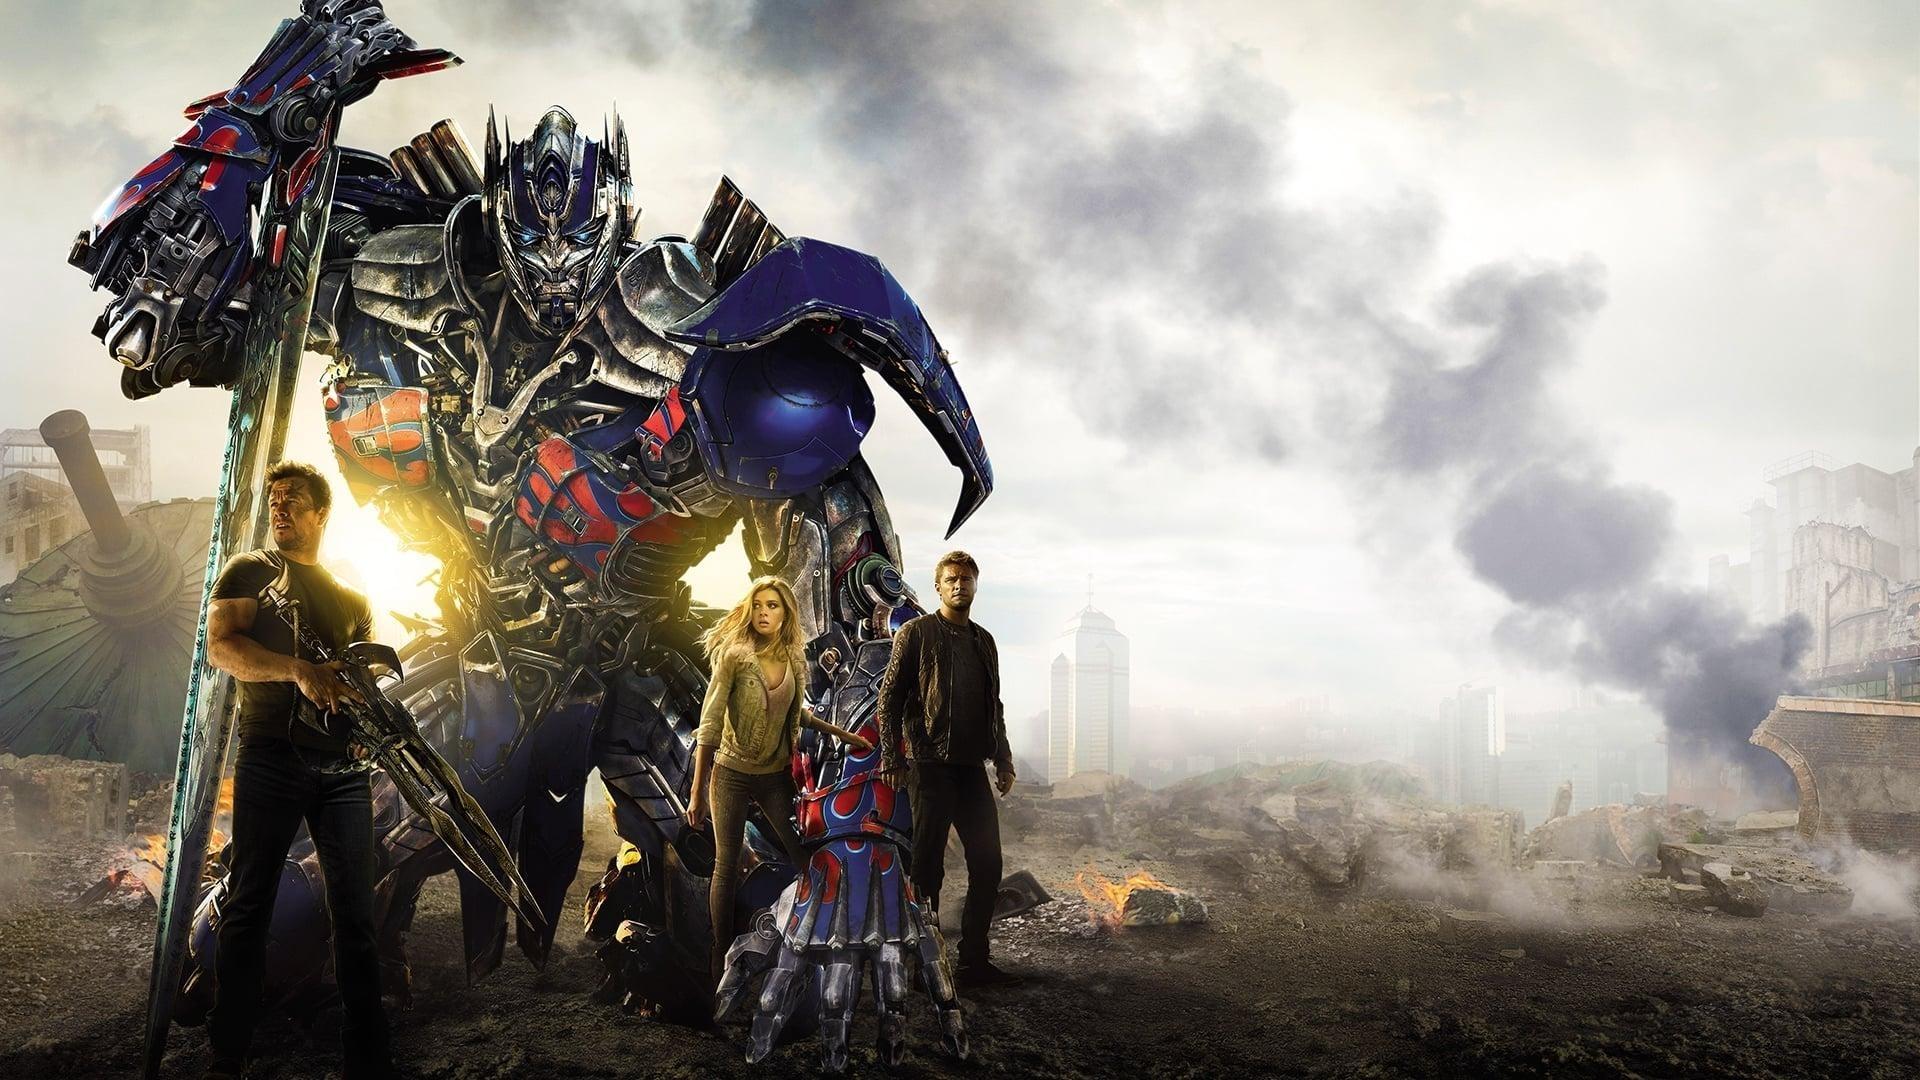 دانلود فیلم Transformers: Age of Extinction 2014